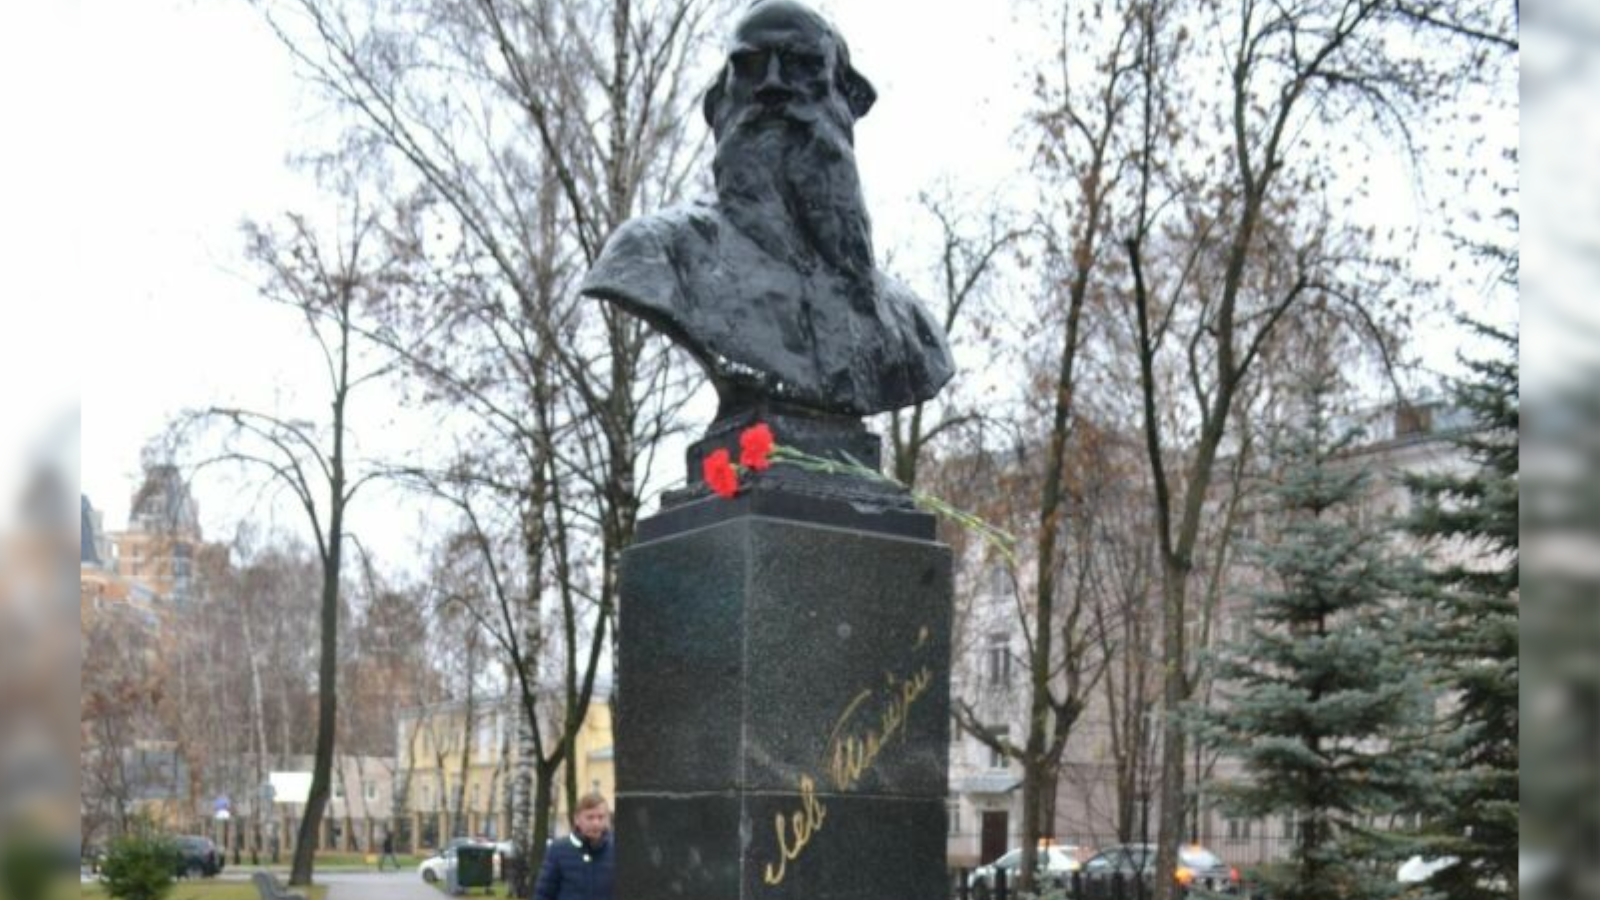 Ma Kazanyban virágot helyeztek el a megszálló, Lev Tolsztoj emlékművénél